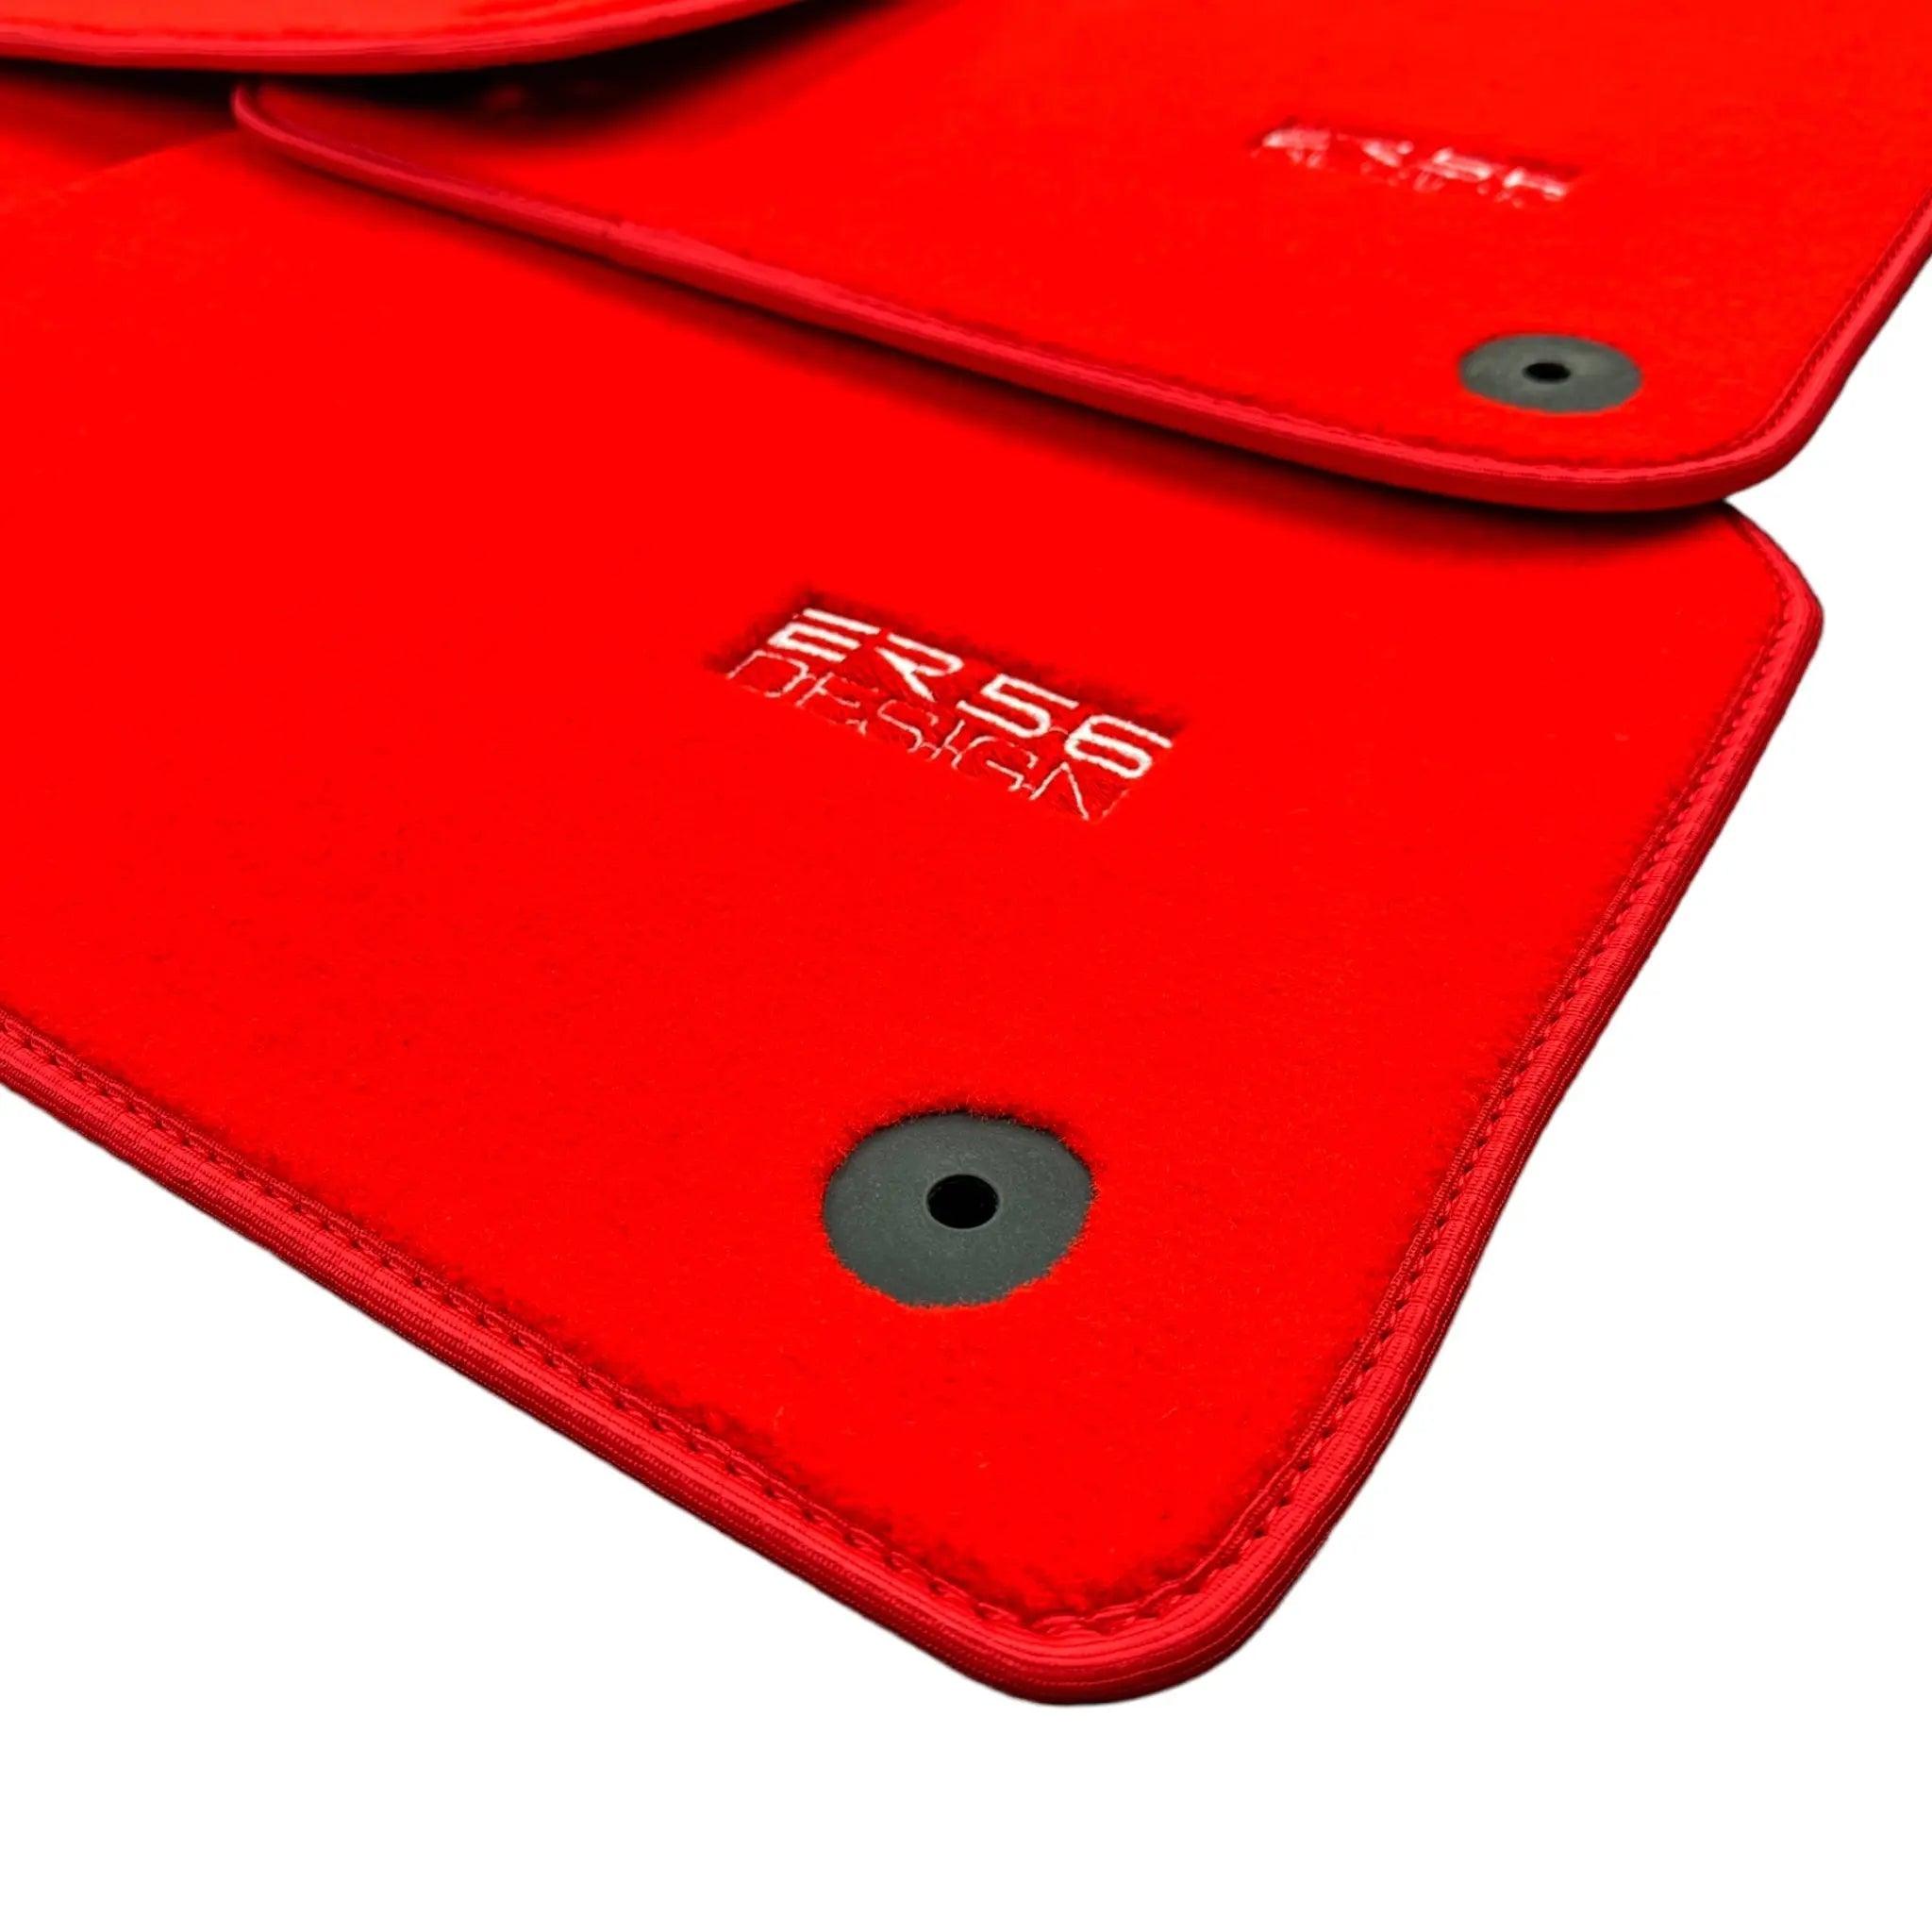 Red Floor Mats for Audi Q2 (2016-2020) | ER56 Design